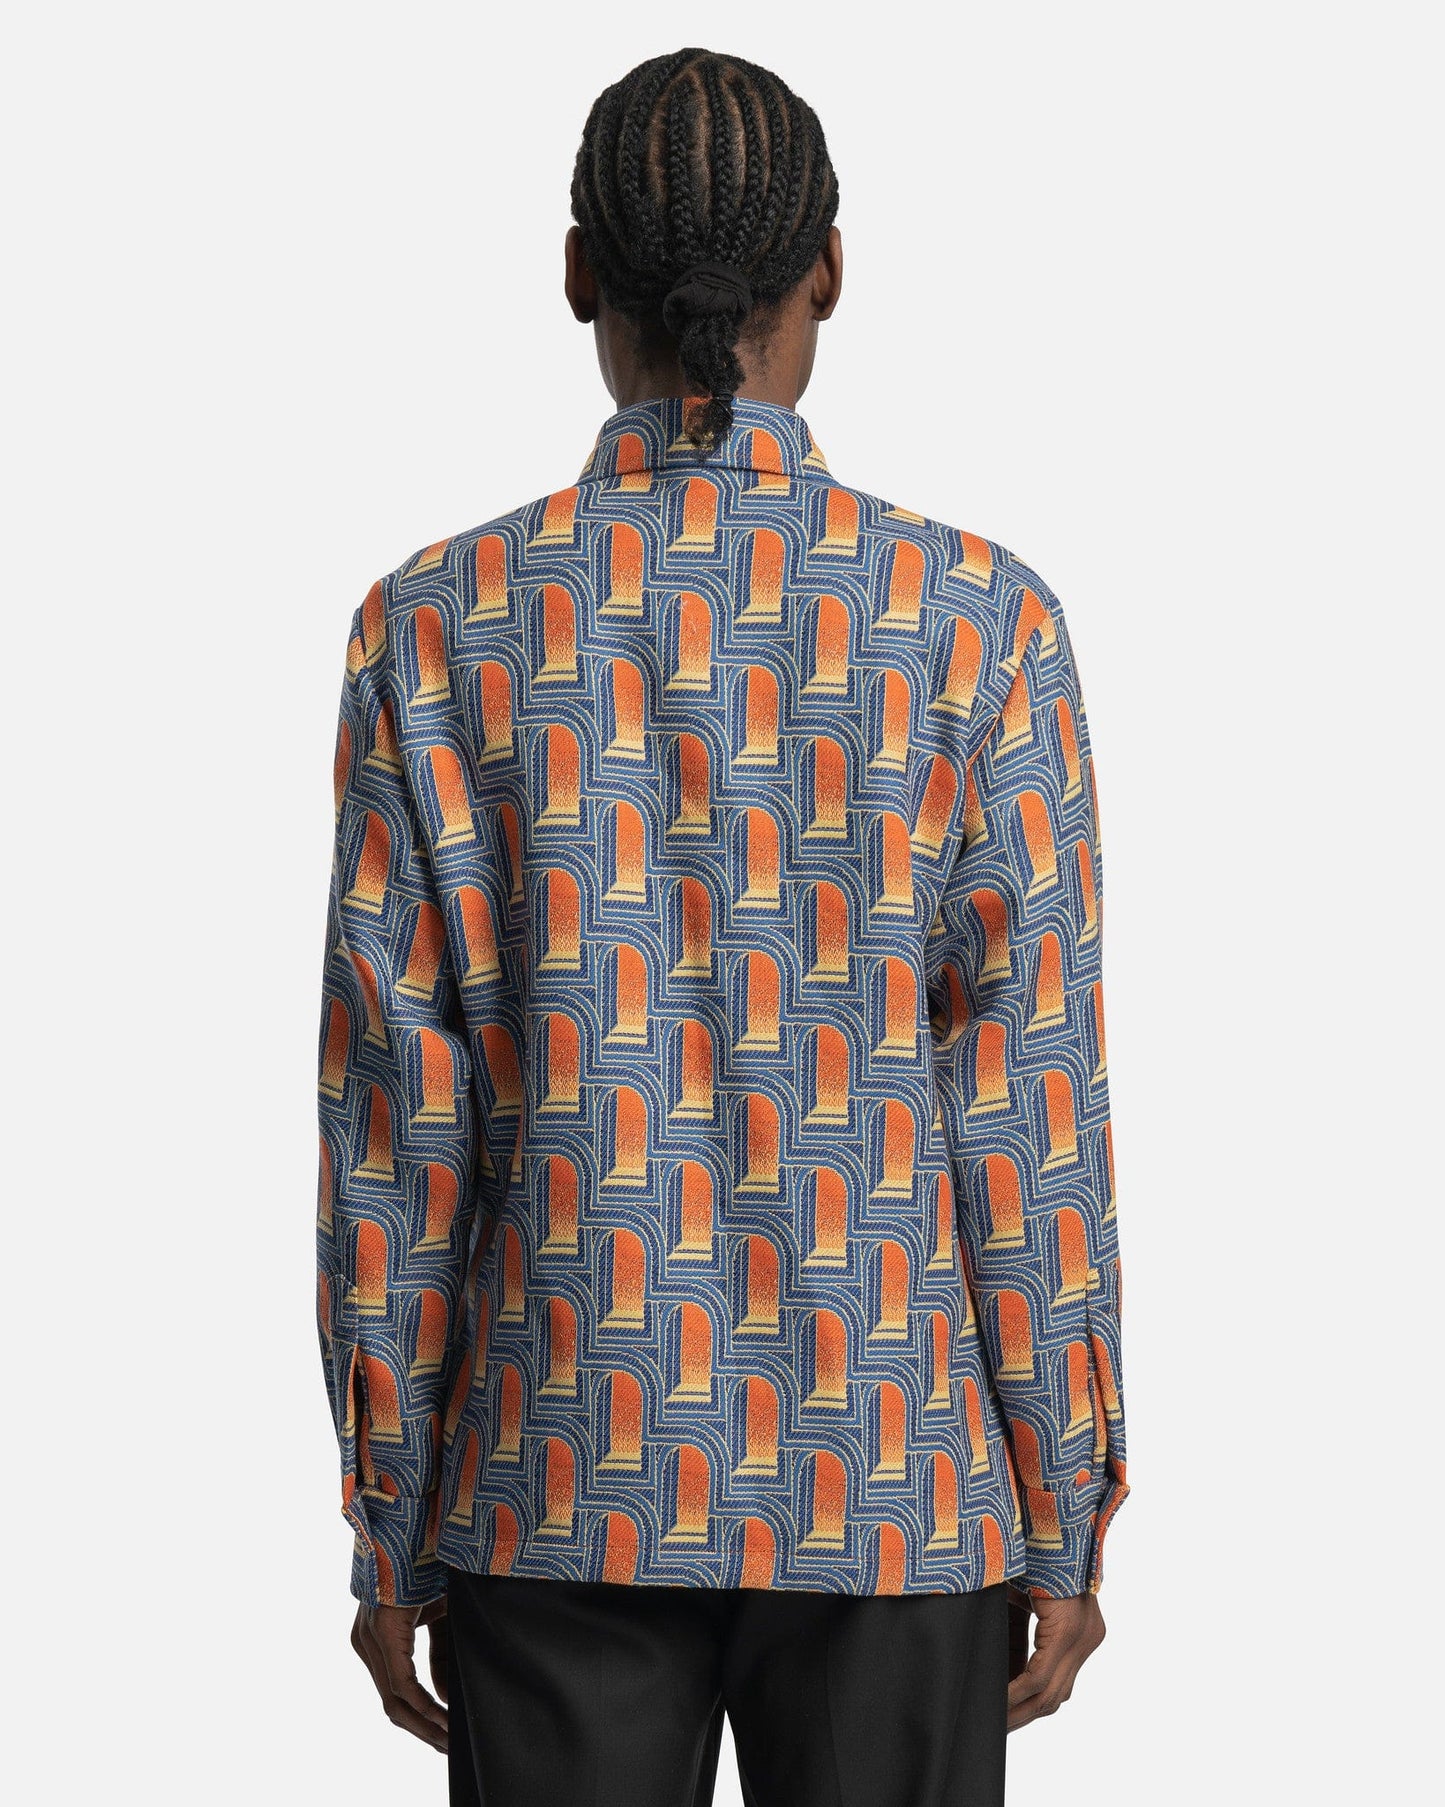 Casablanca Men's Jackets L'Arche De Nuit Jacquard Shirt Jacket in Multicolor